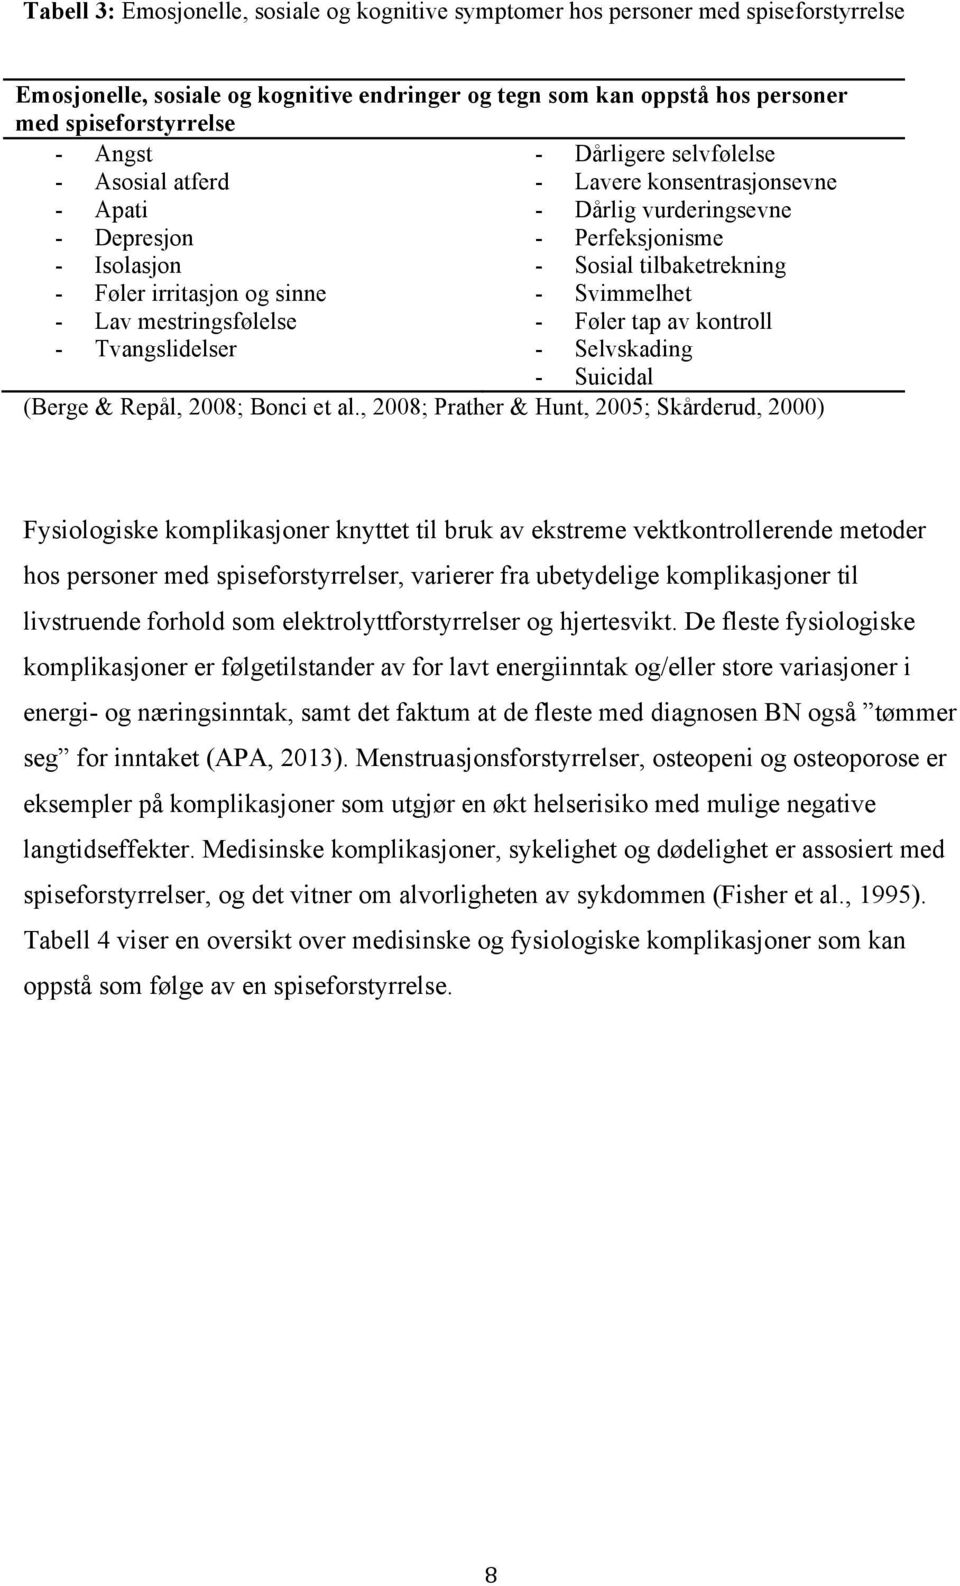 Svimmelhet - Lav mestringsfølelse - Føler tap av kontroll - Tvangslidelser - Selvskading - Suicidal (Berge & Repål, 2008; Bonci et al.